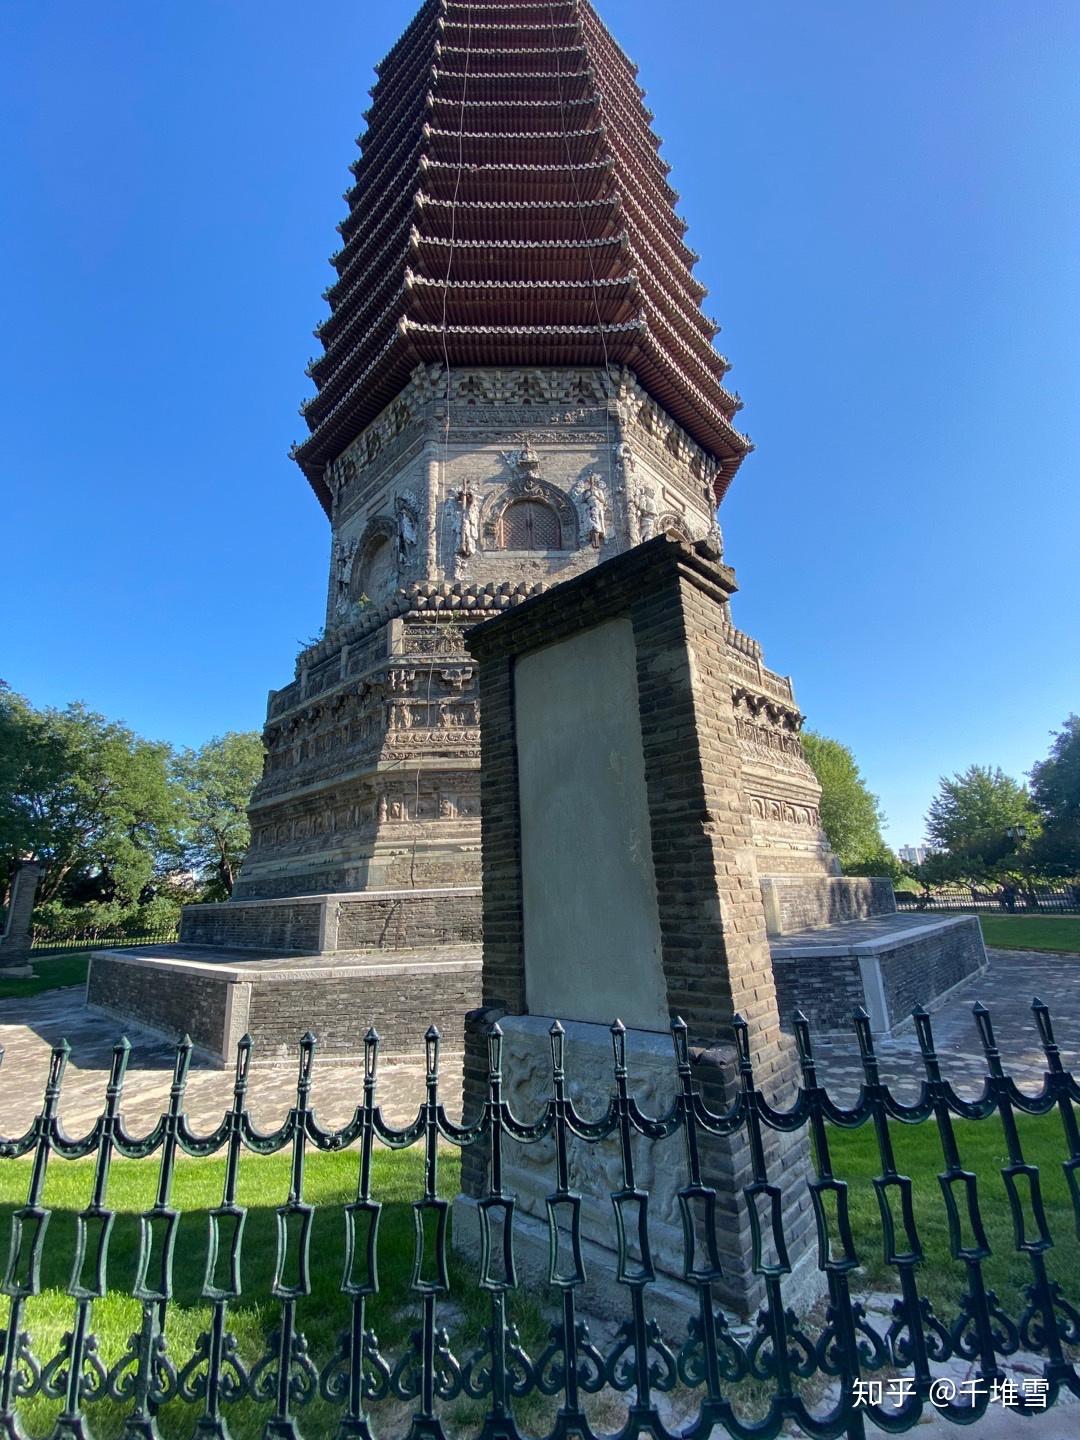 下午探寻了北京冷门古迹玲珑塔,又名慈寿寺塔,位于玲珑公园内,乃明